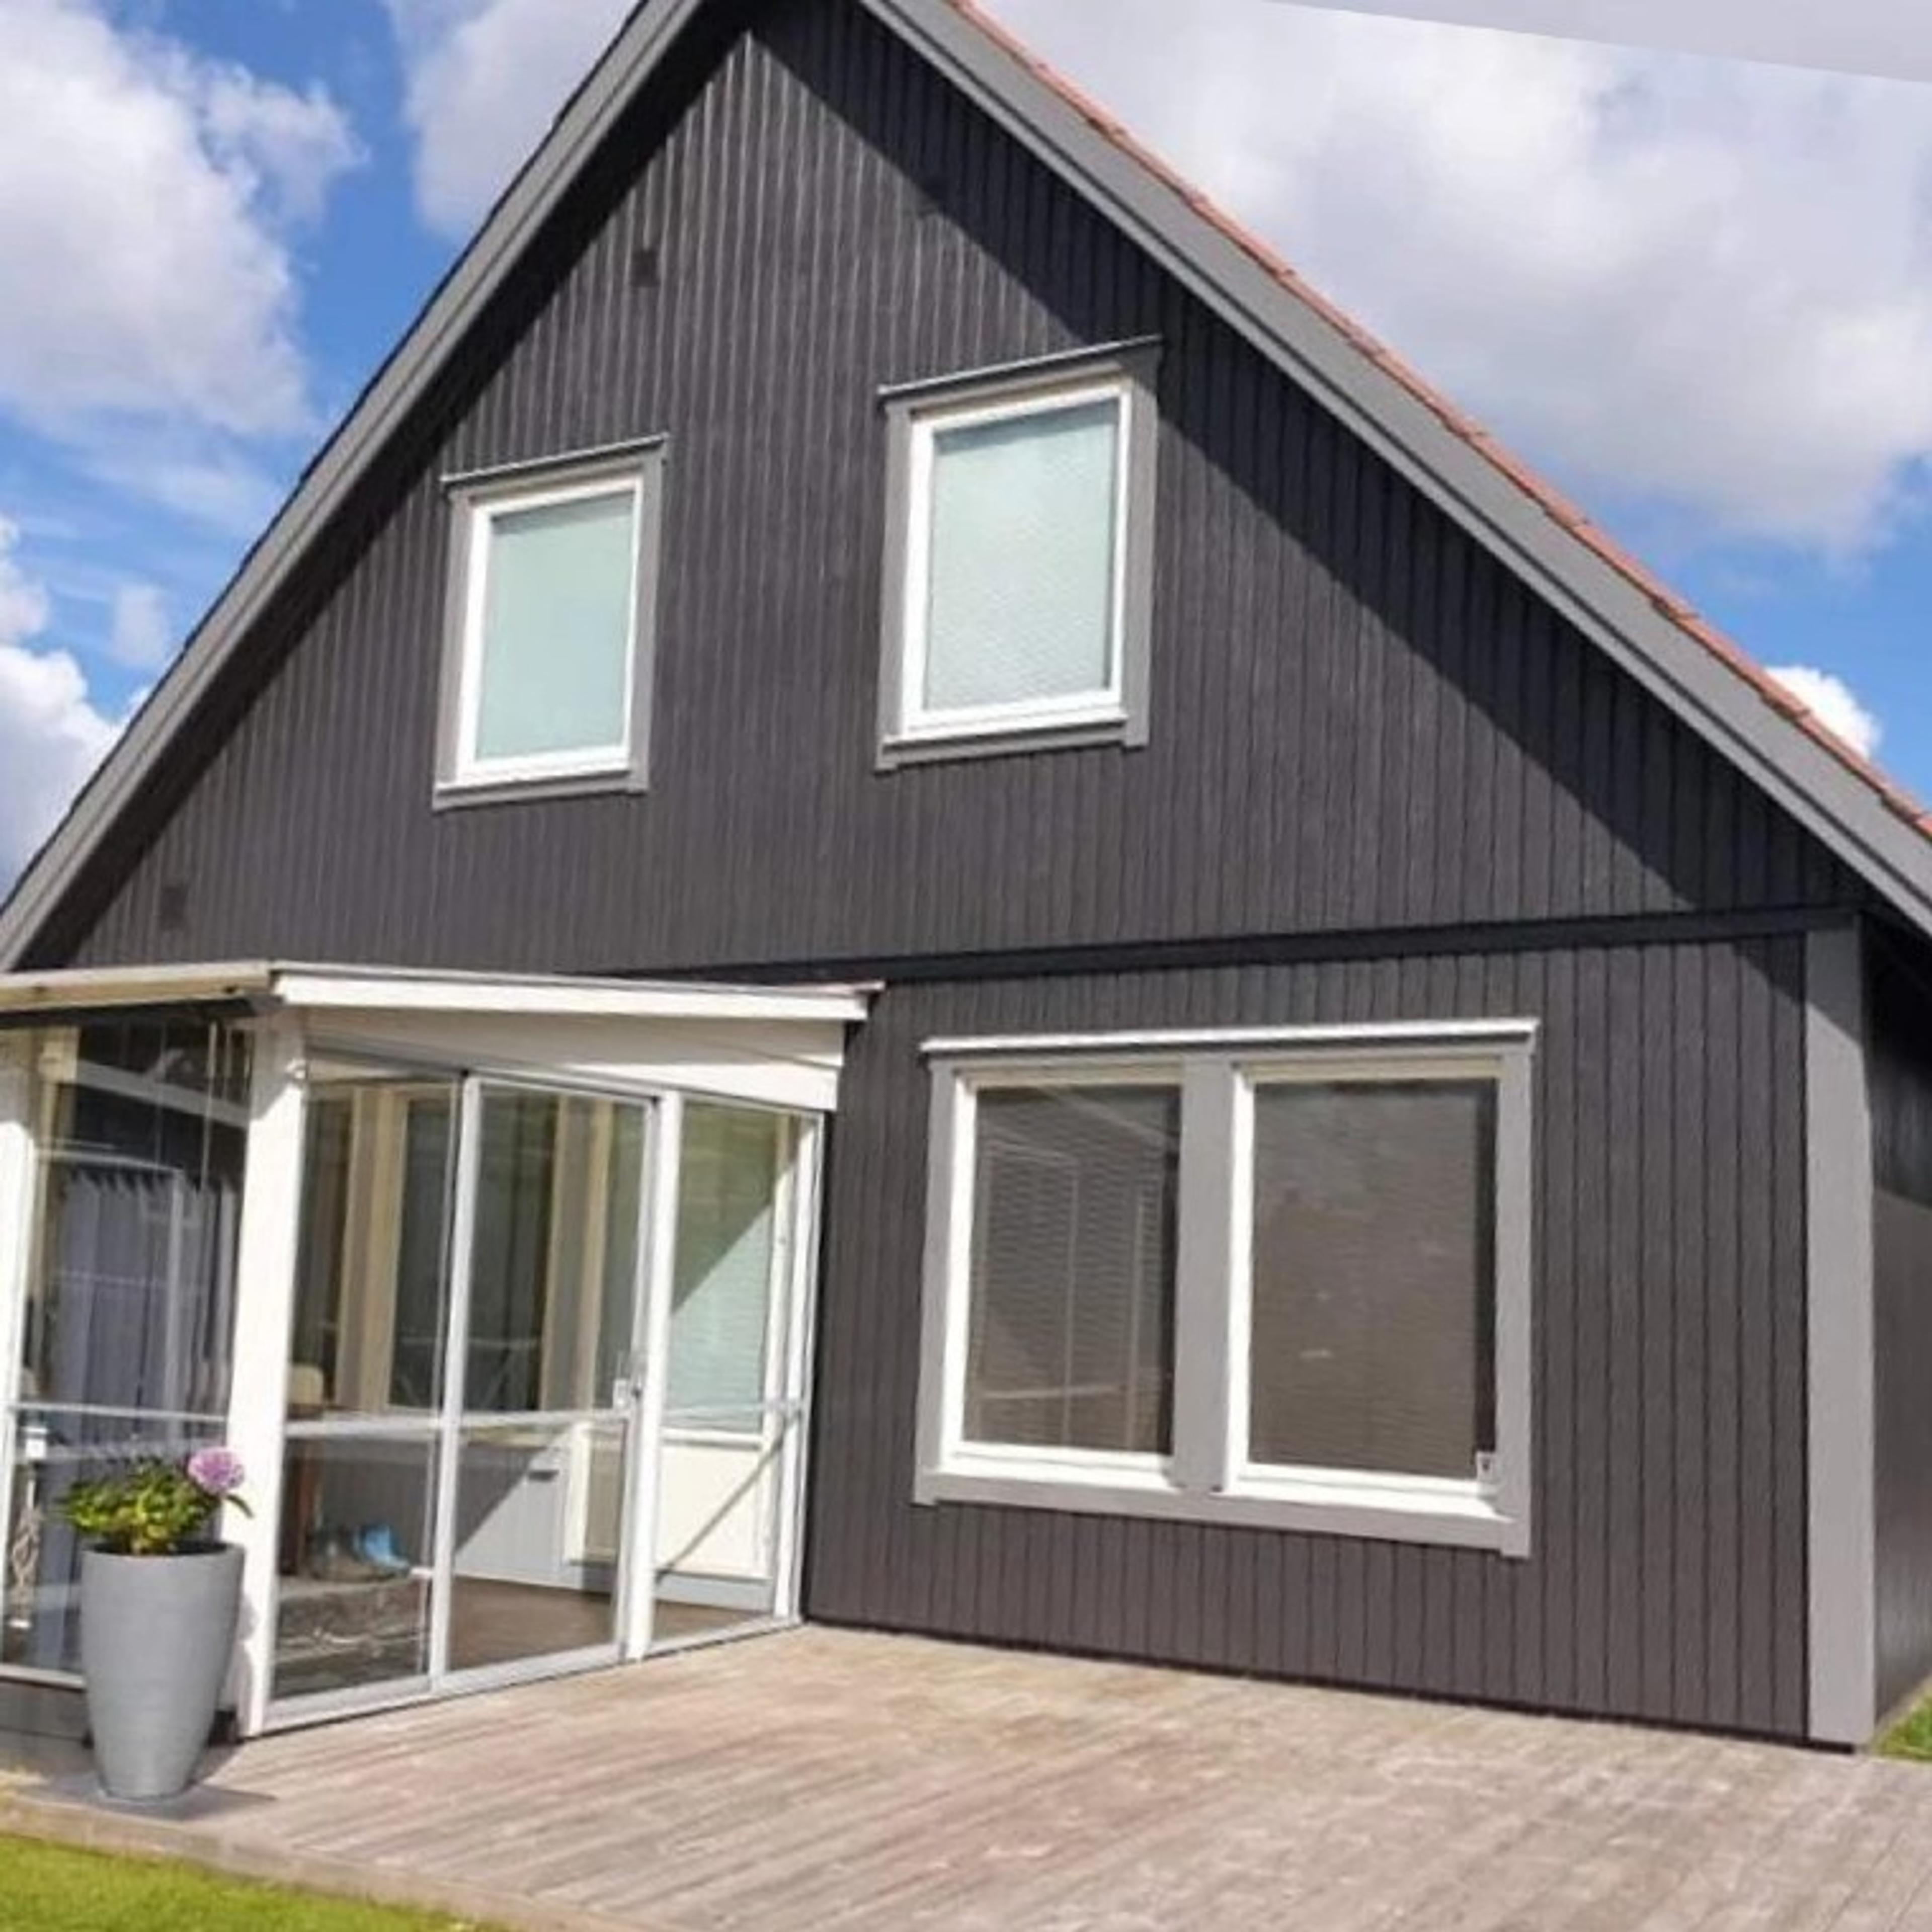 AH Bygg har monterat gråa fönster i ett svart hus, snygg kontrast